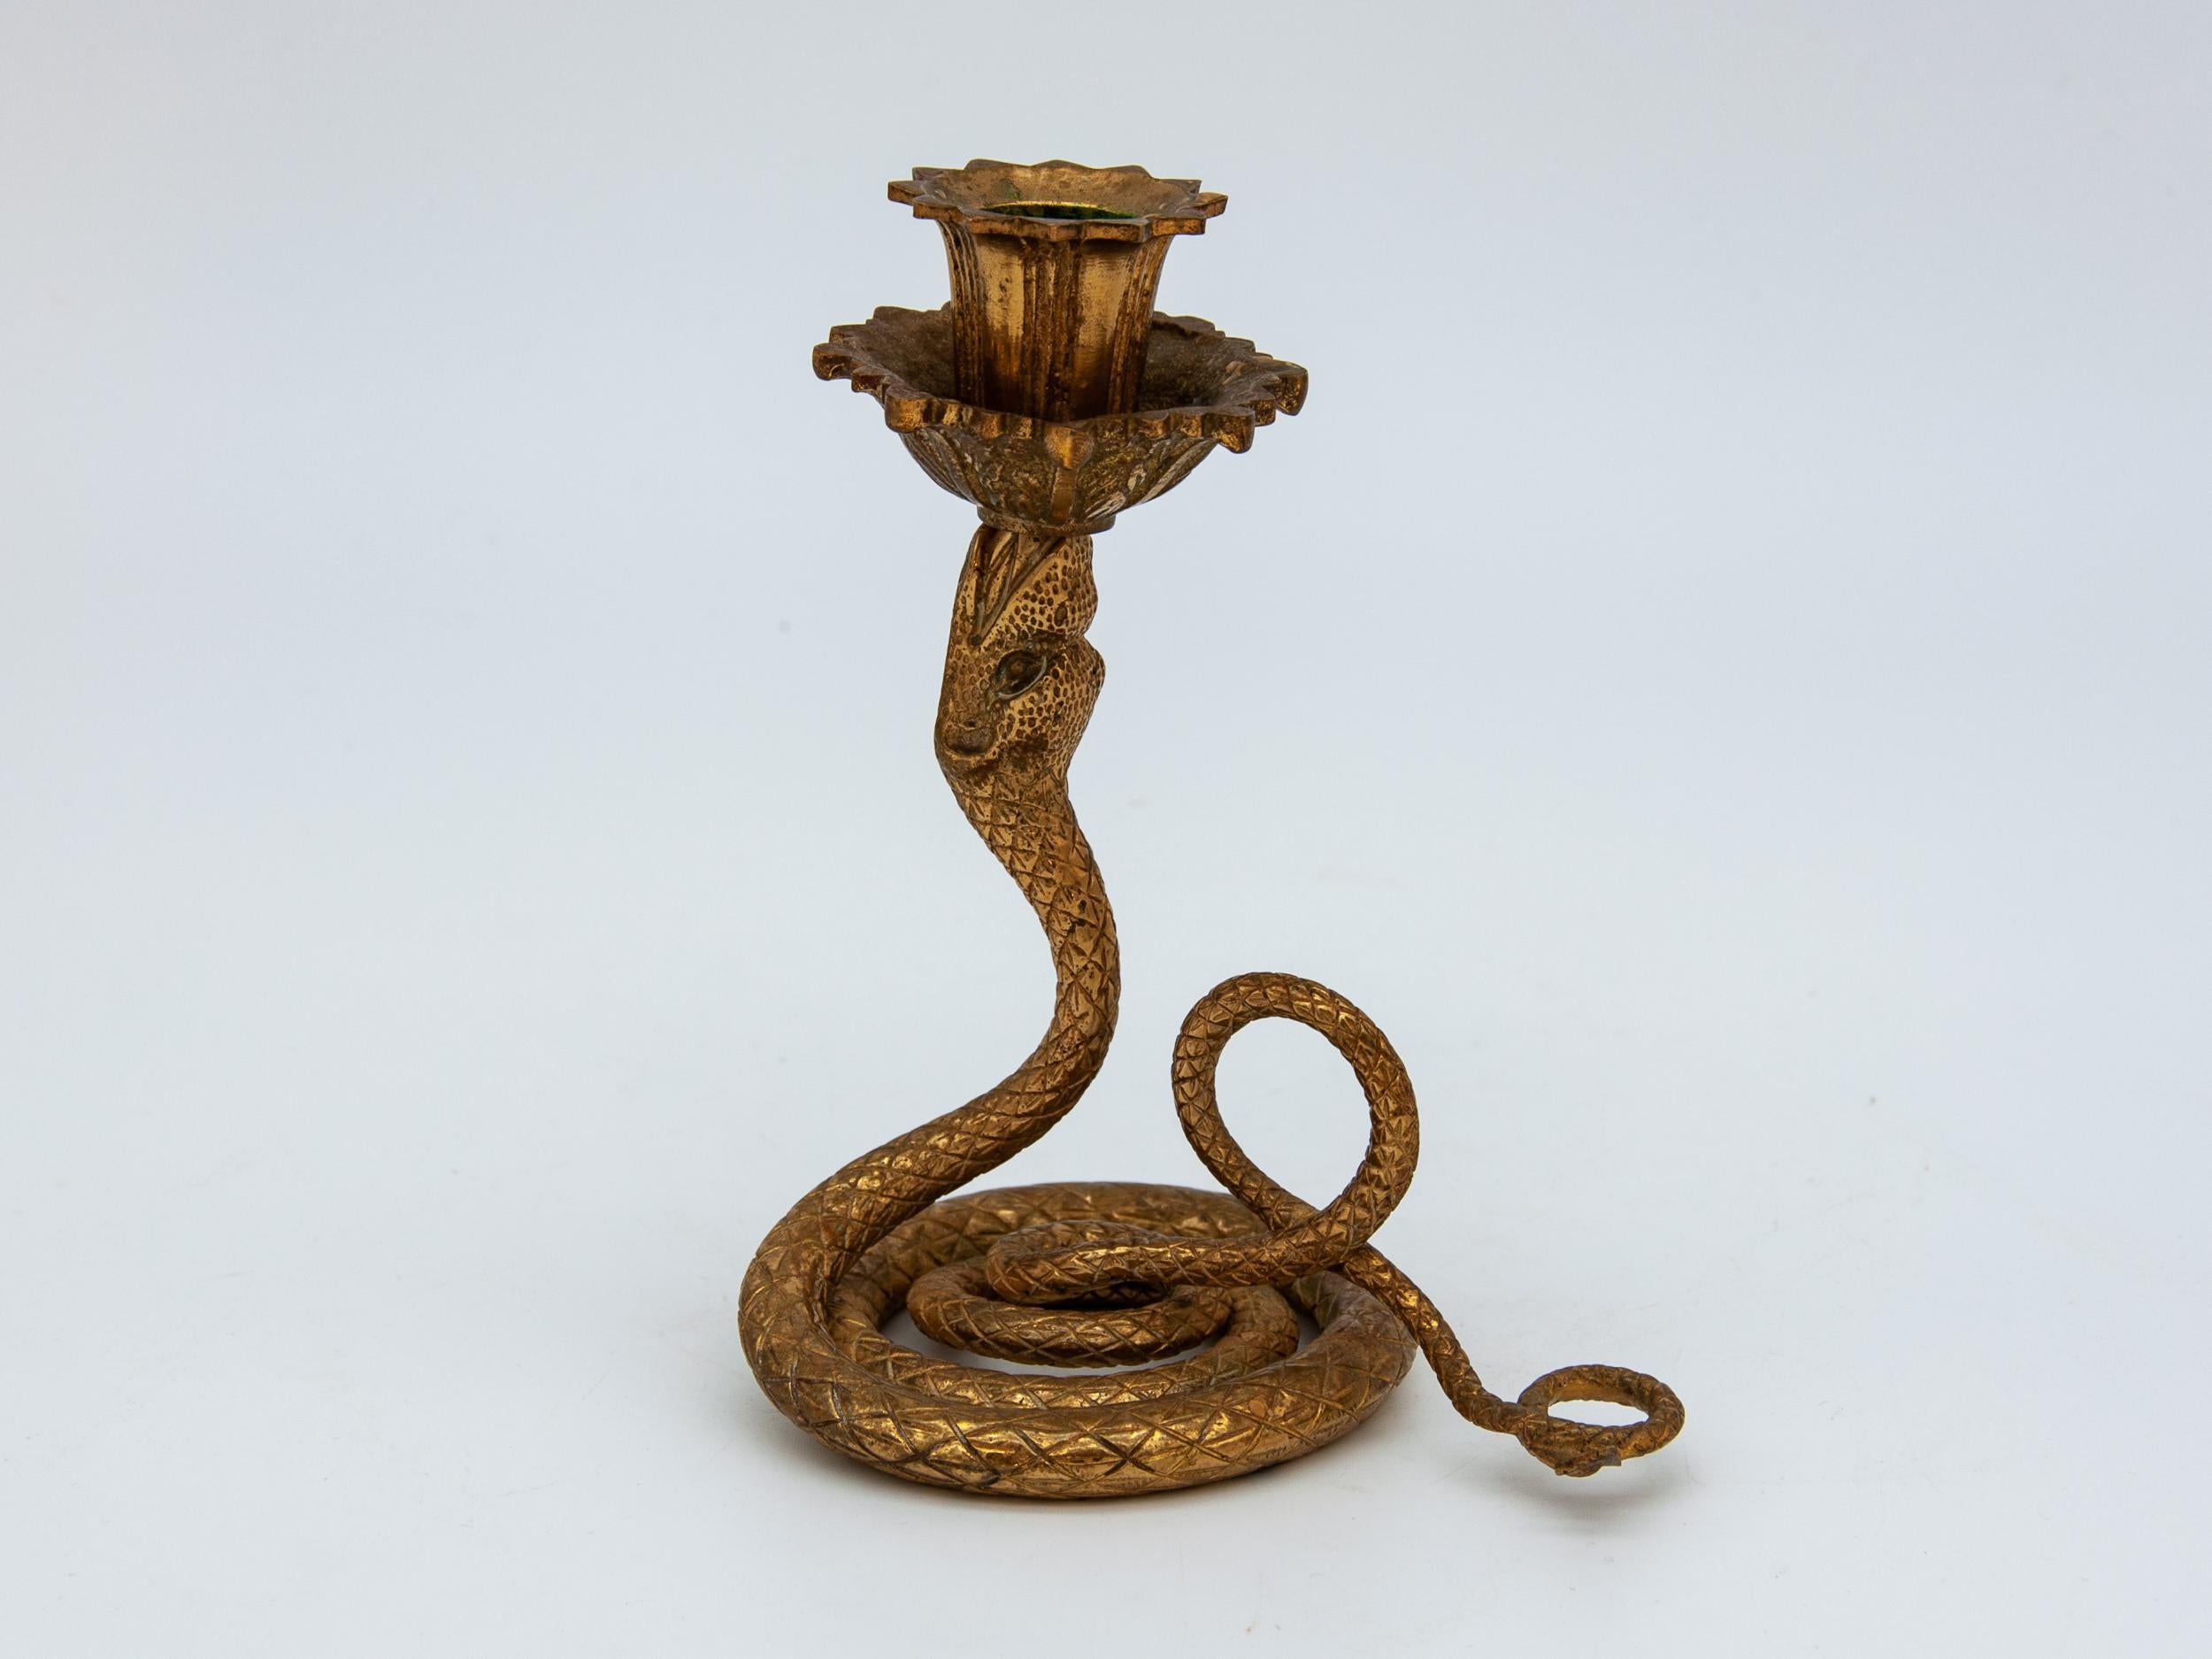 snake candle holder target